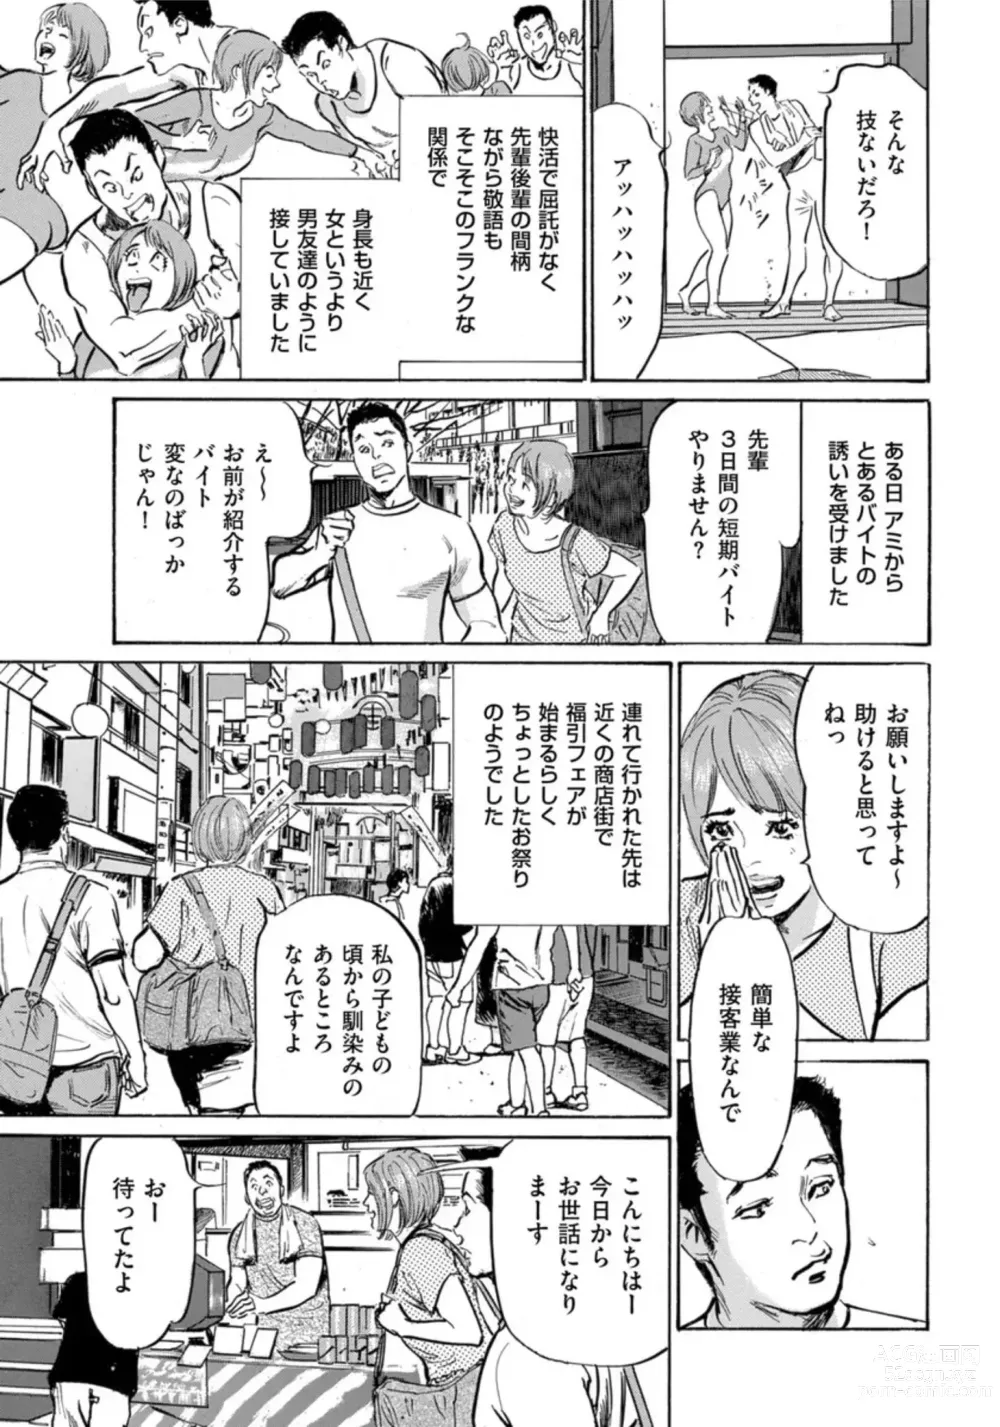 Page 4 of manga Zutto Himitsu ni Shiteita Ano Koto Zenbu Oshiemasu 14 episodes